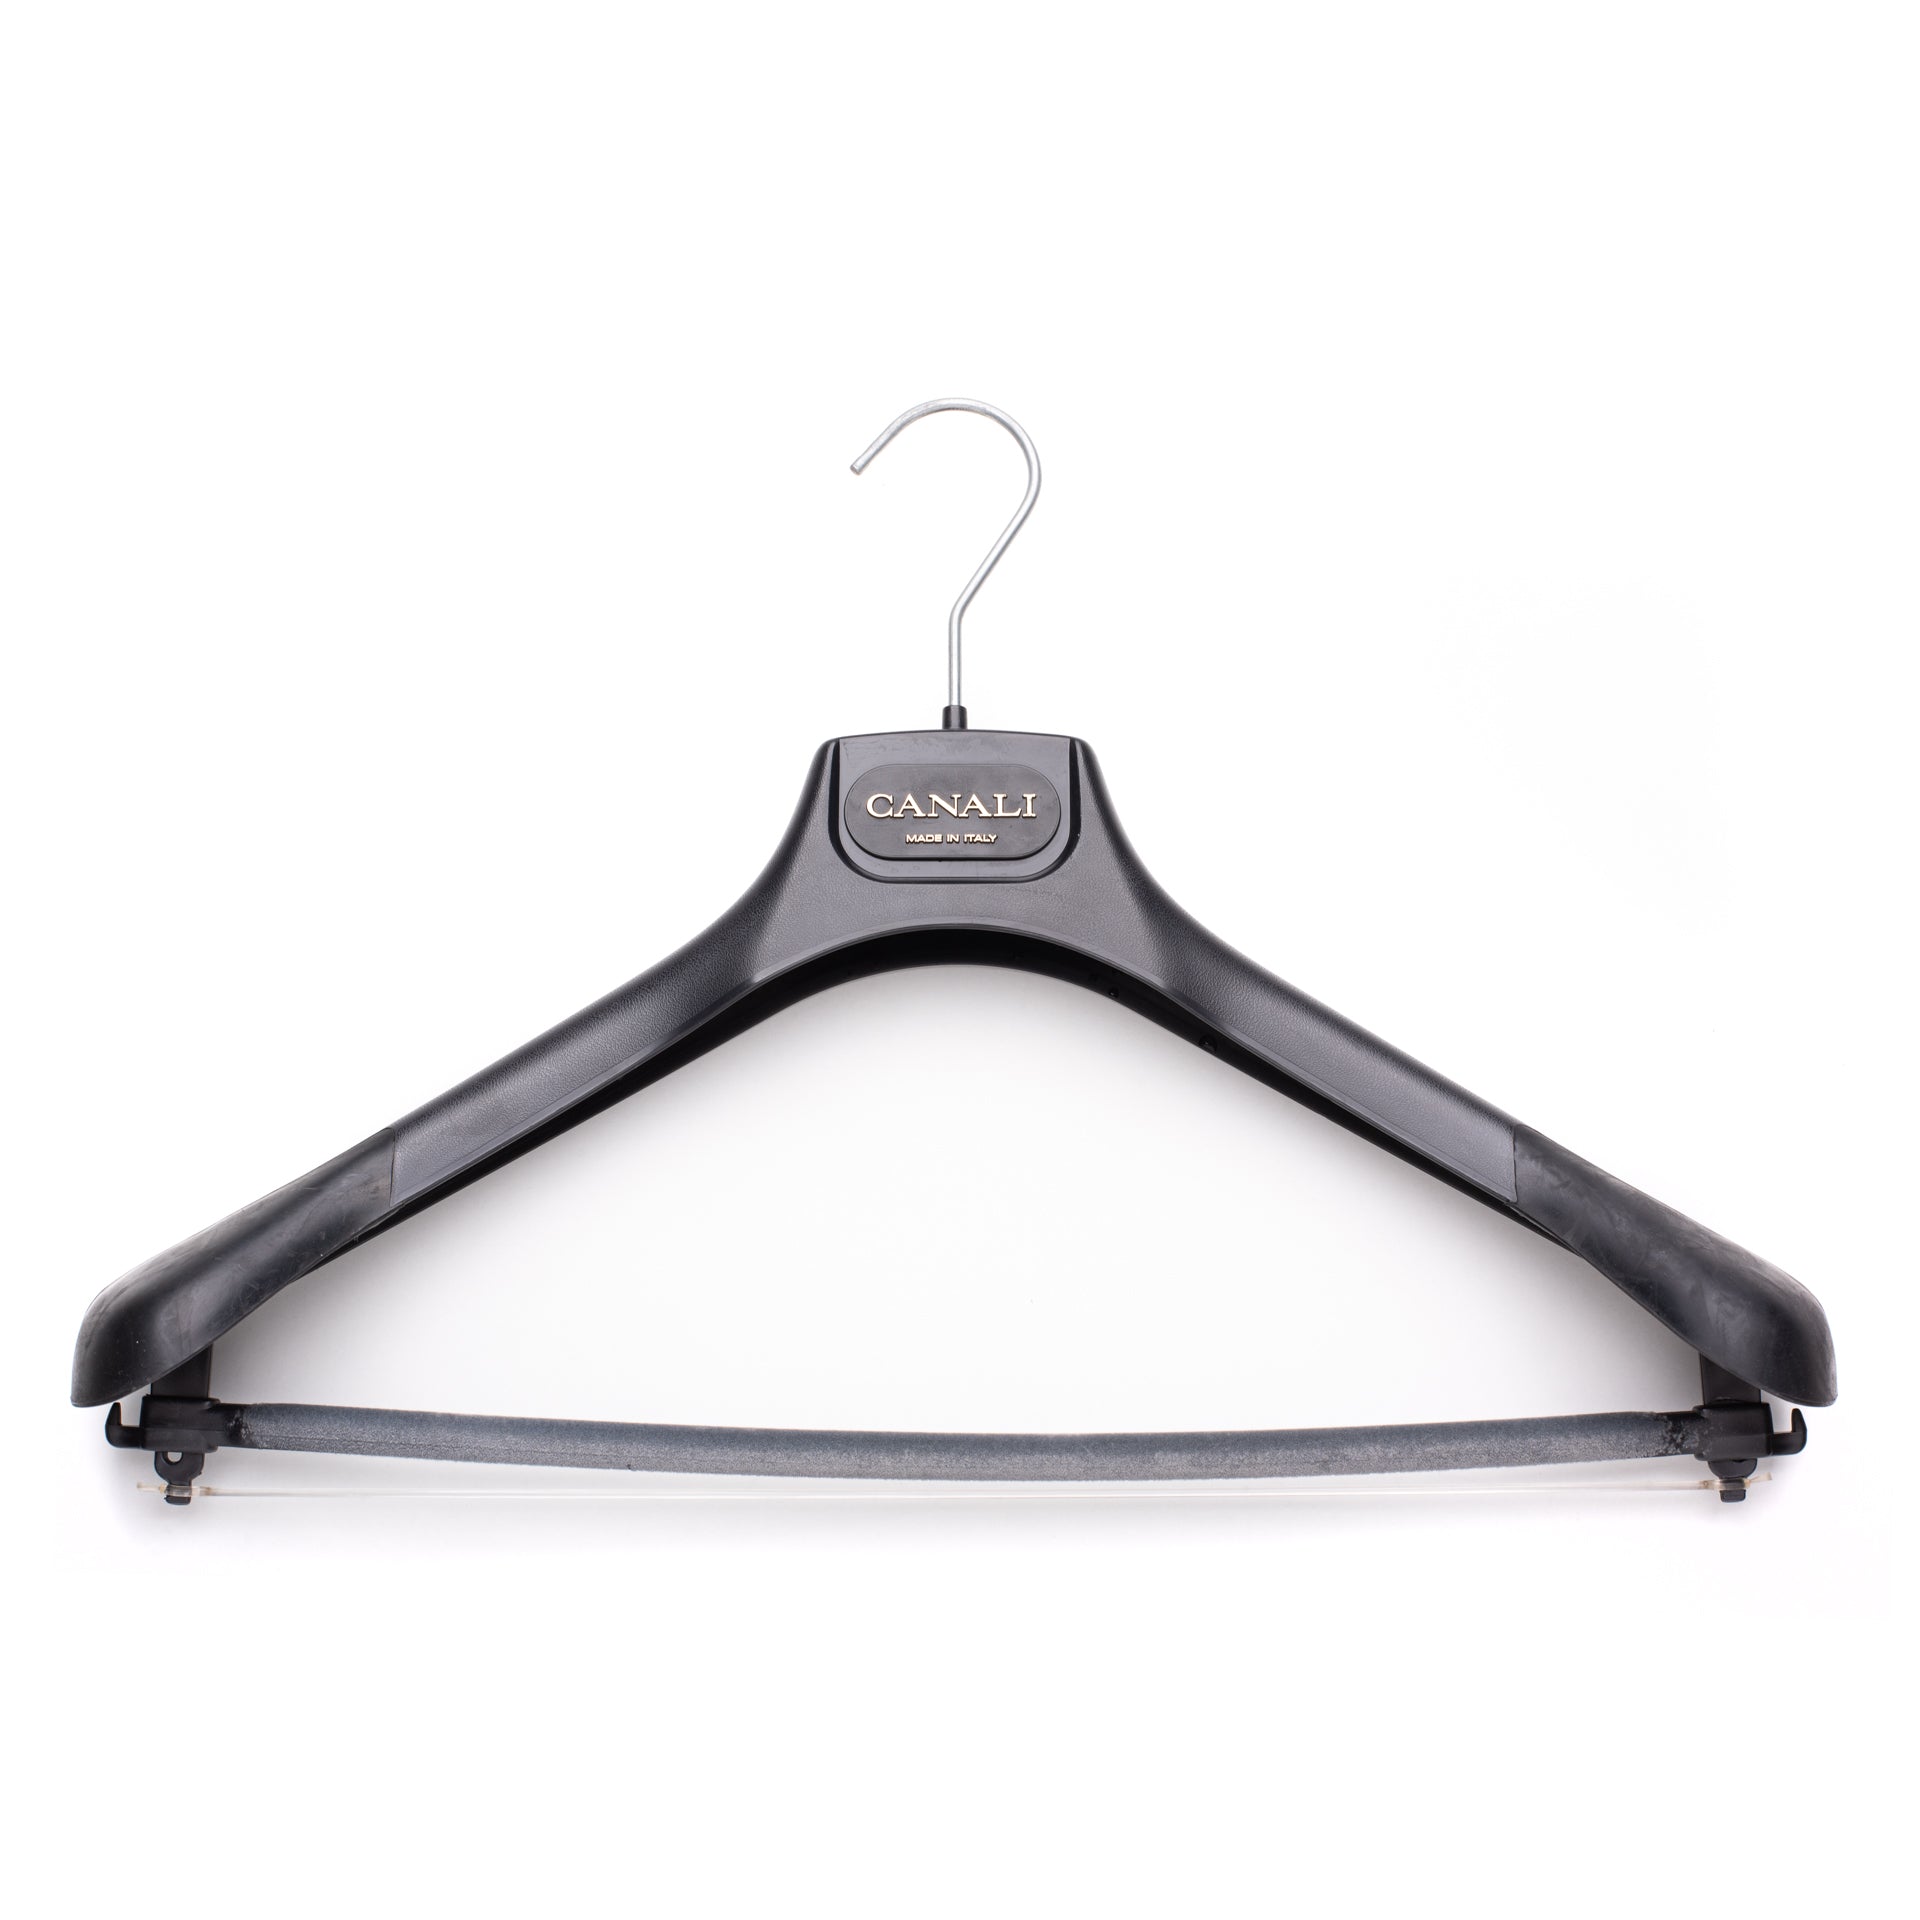 Black PP Plastic Coat Hanger